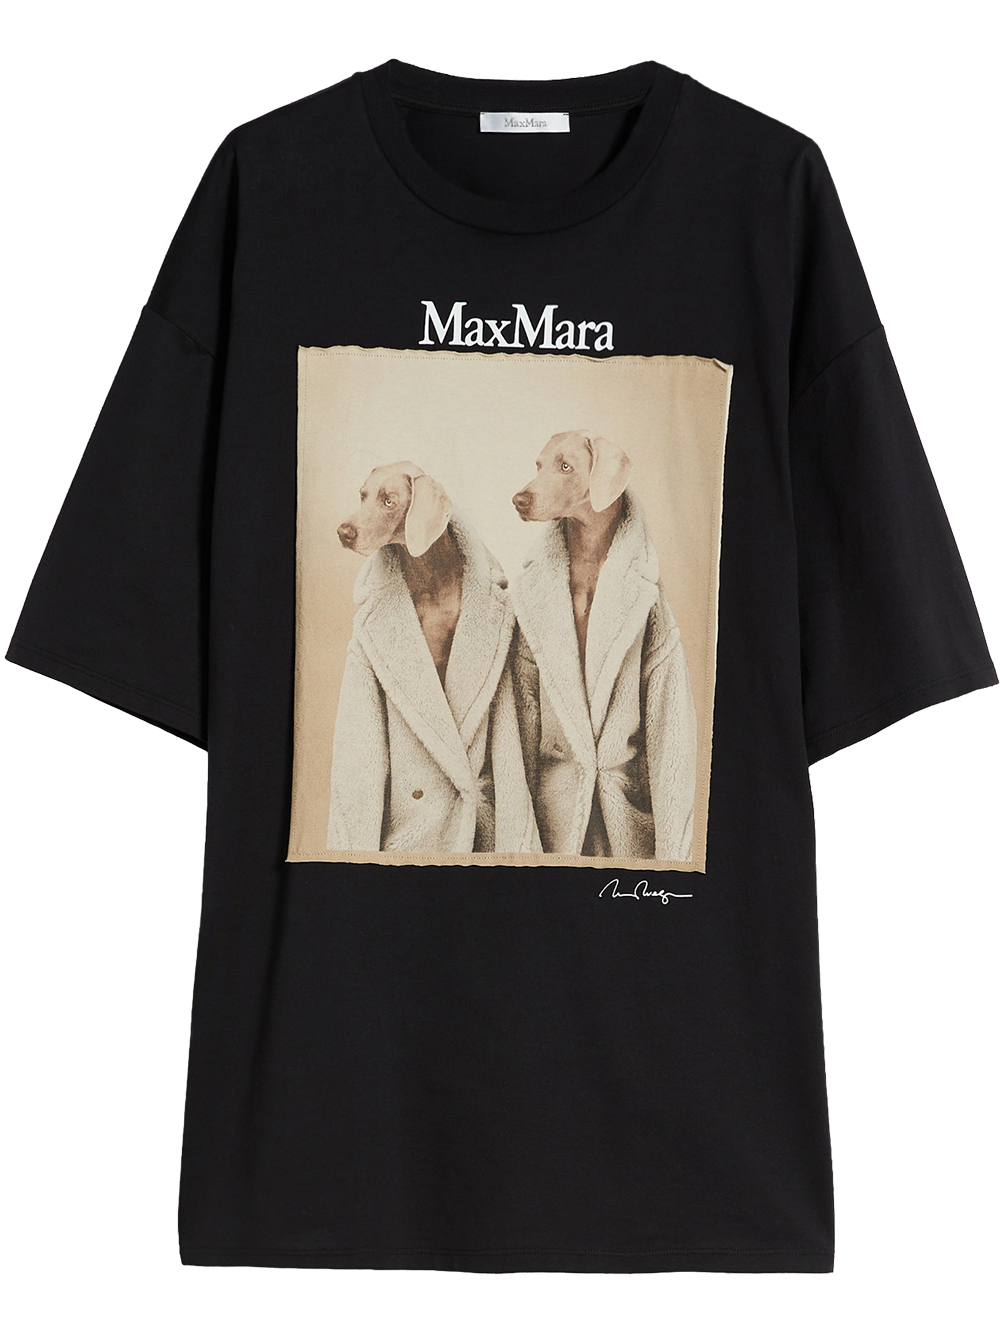 Max Mara Tacco Dog T-Shirt